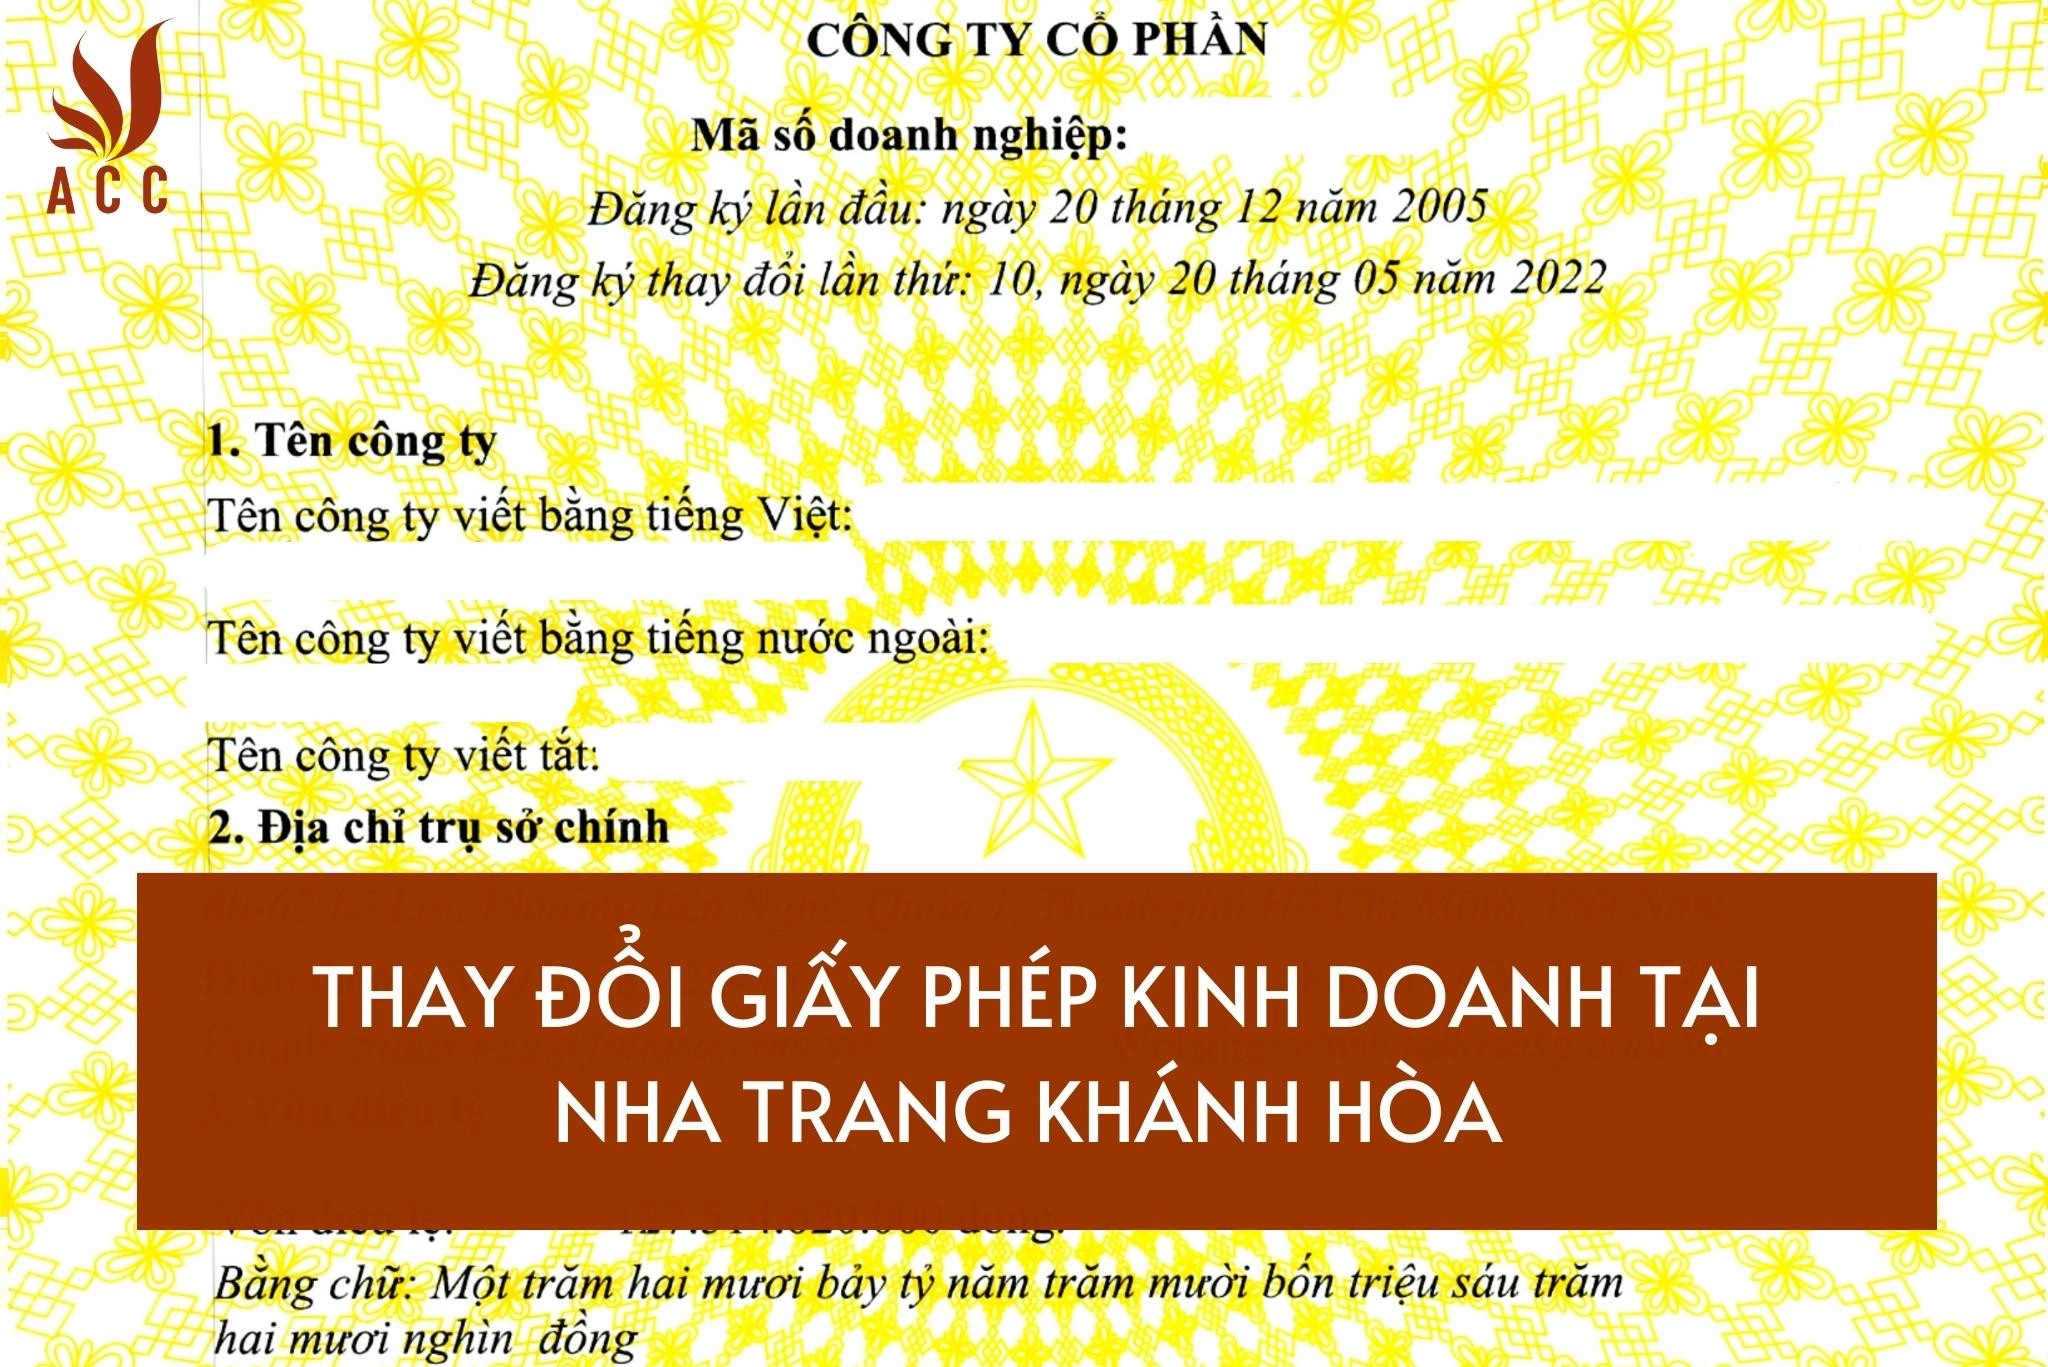 Thay đổi giấy phép kinh doanh tại Nha Trang - Khánh Hòa